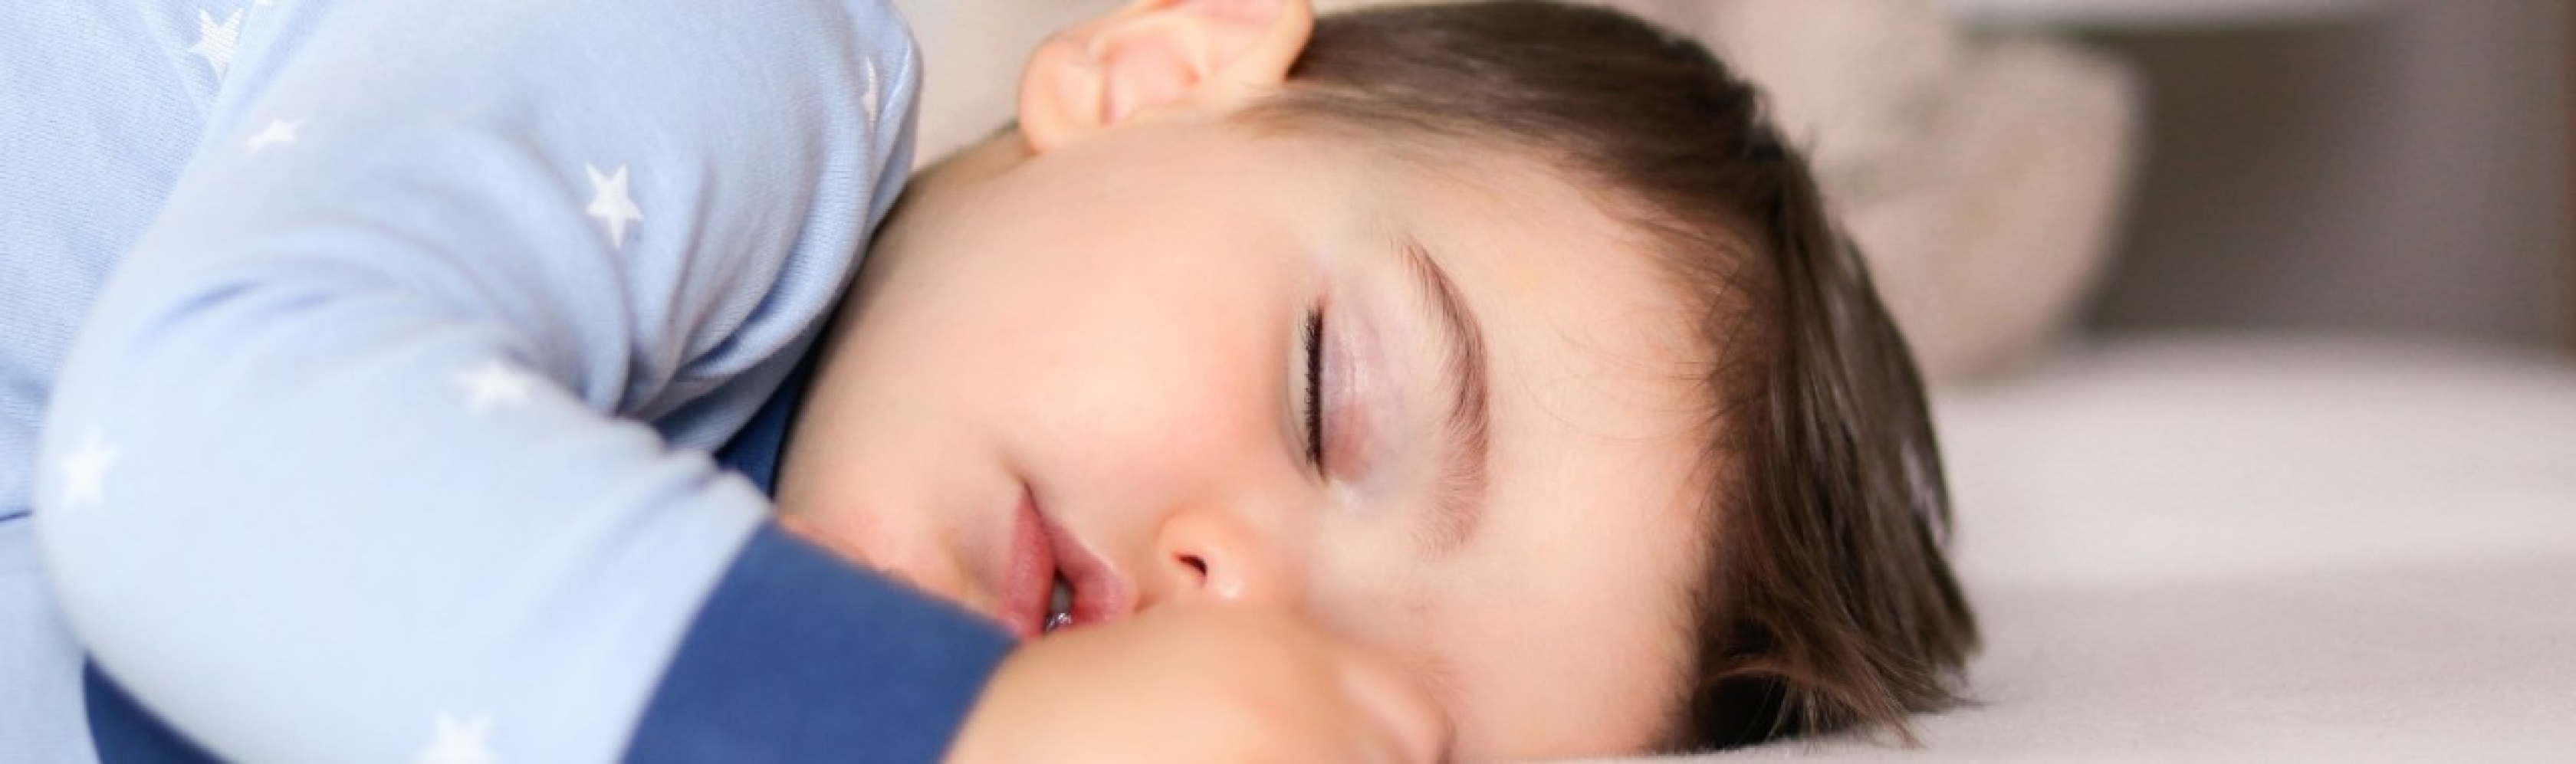 Un enfant dort à poings fermés. Nous passons plus d’un tiers de notre existence à dormir et notre rythme de sommeil évolue considérablement au cours de la vie.